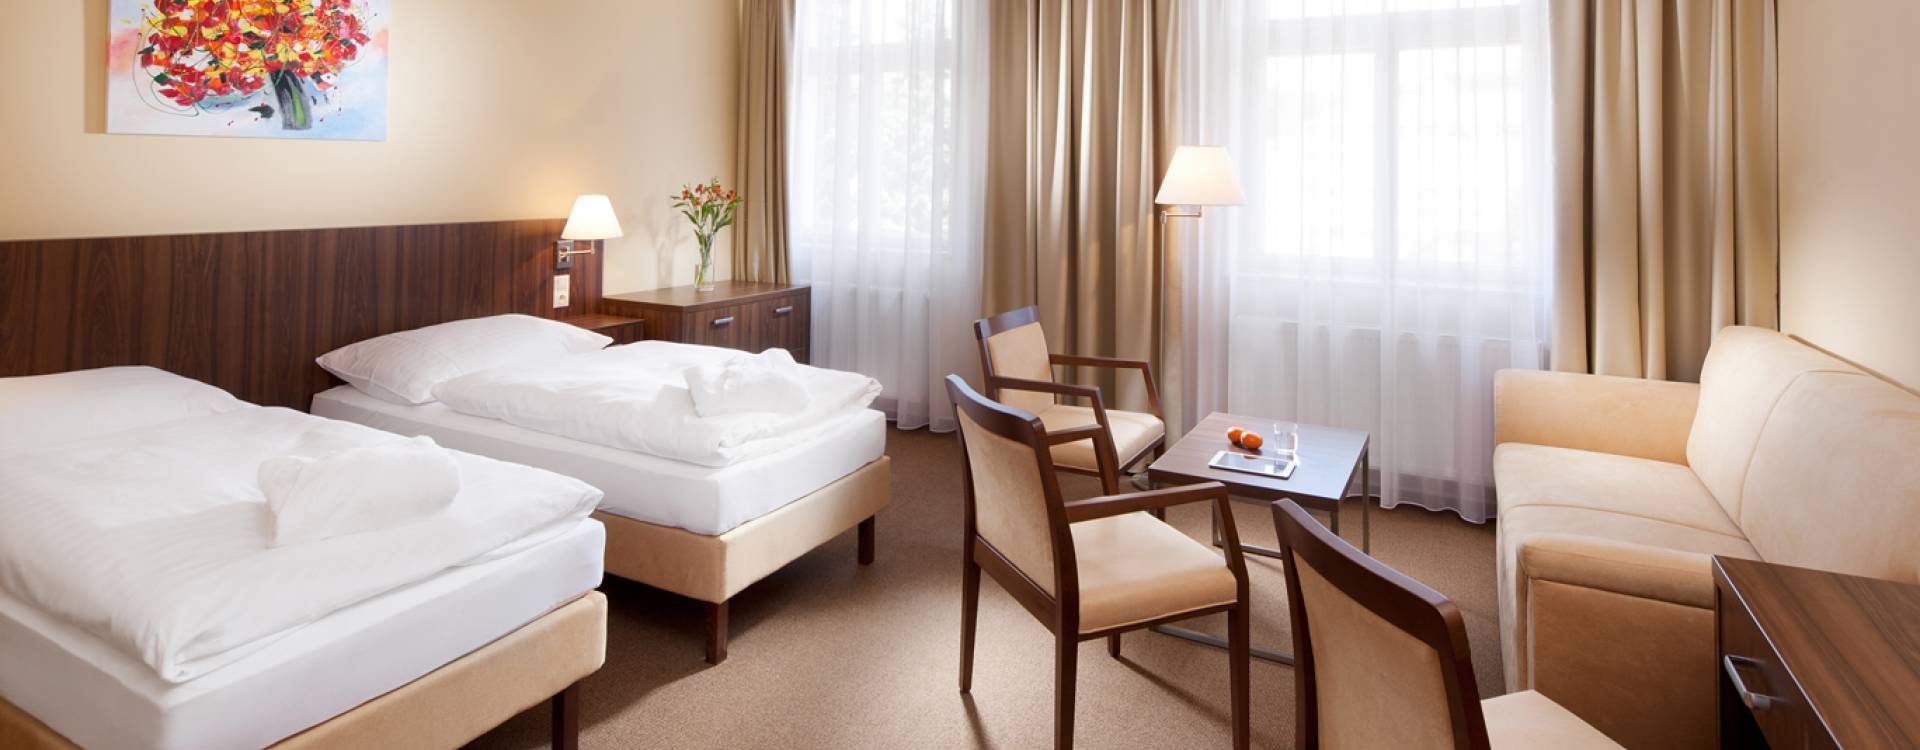 Lázeňský hotel Morava - Ubytování se snídaní